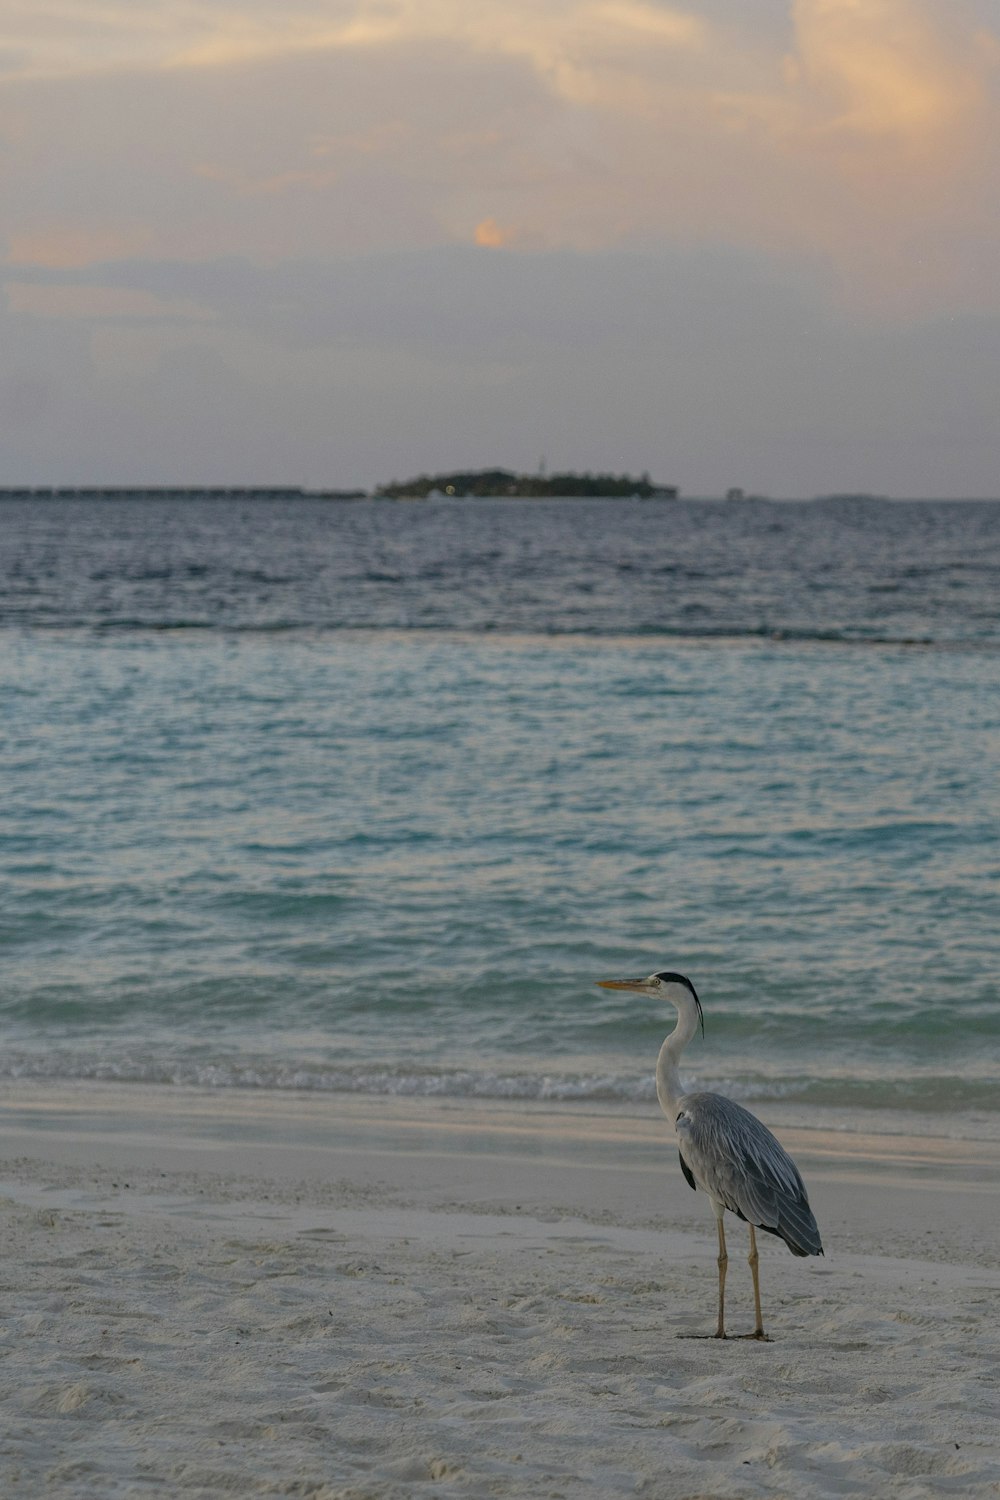 a bird standing on a beach near the ocean